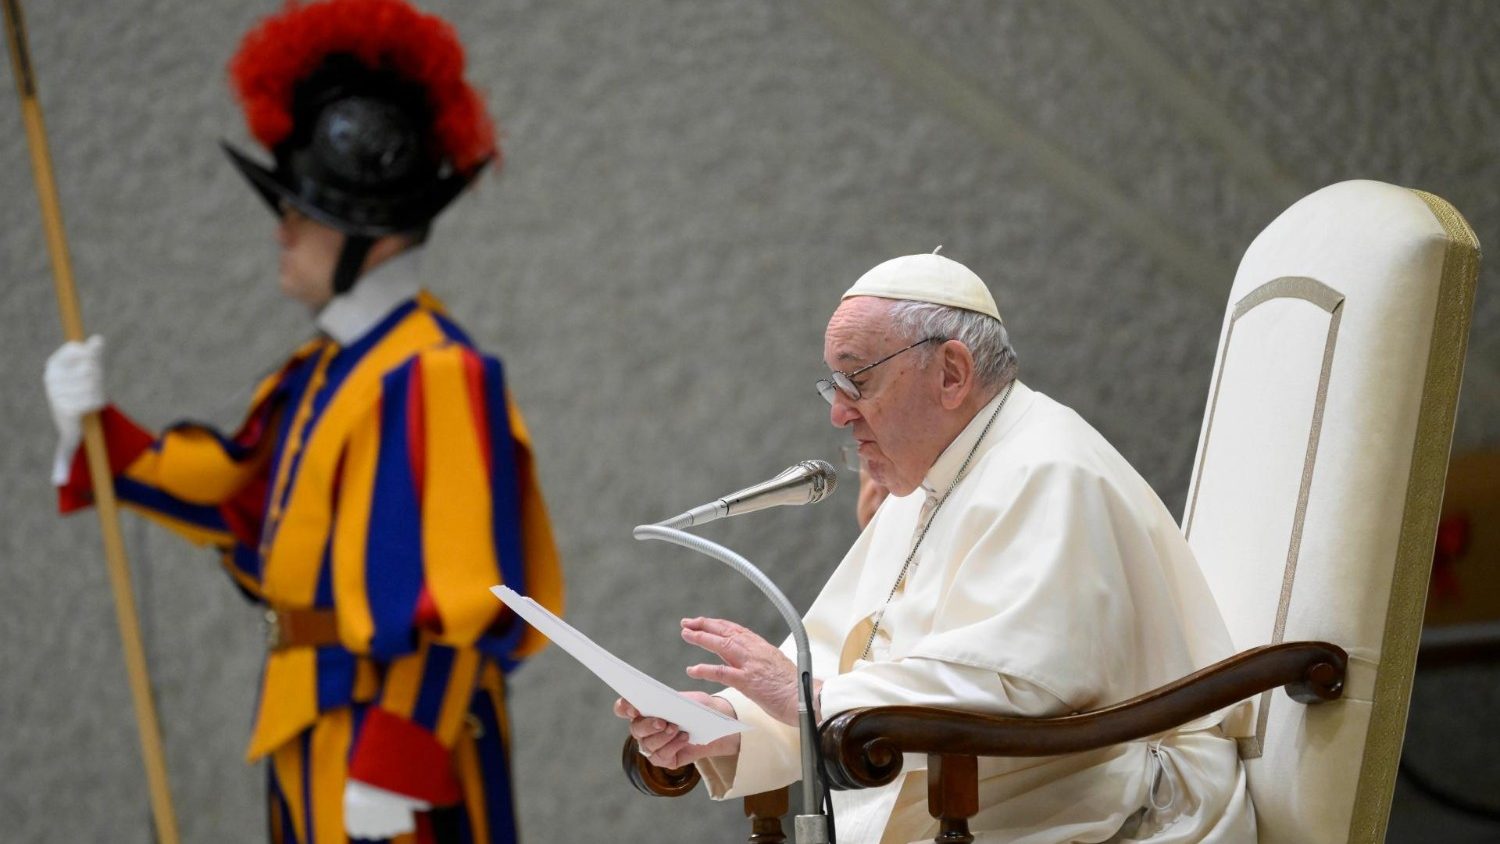 Absay observación No lo hagas El Papa advierte: “el demonio sabe engañarnos y disfrazarse de ángel” -  Vatican News